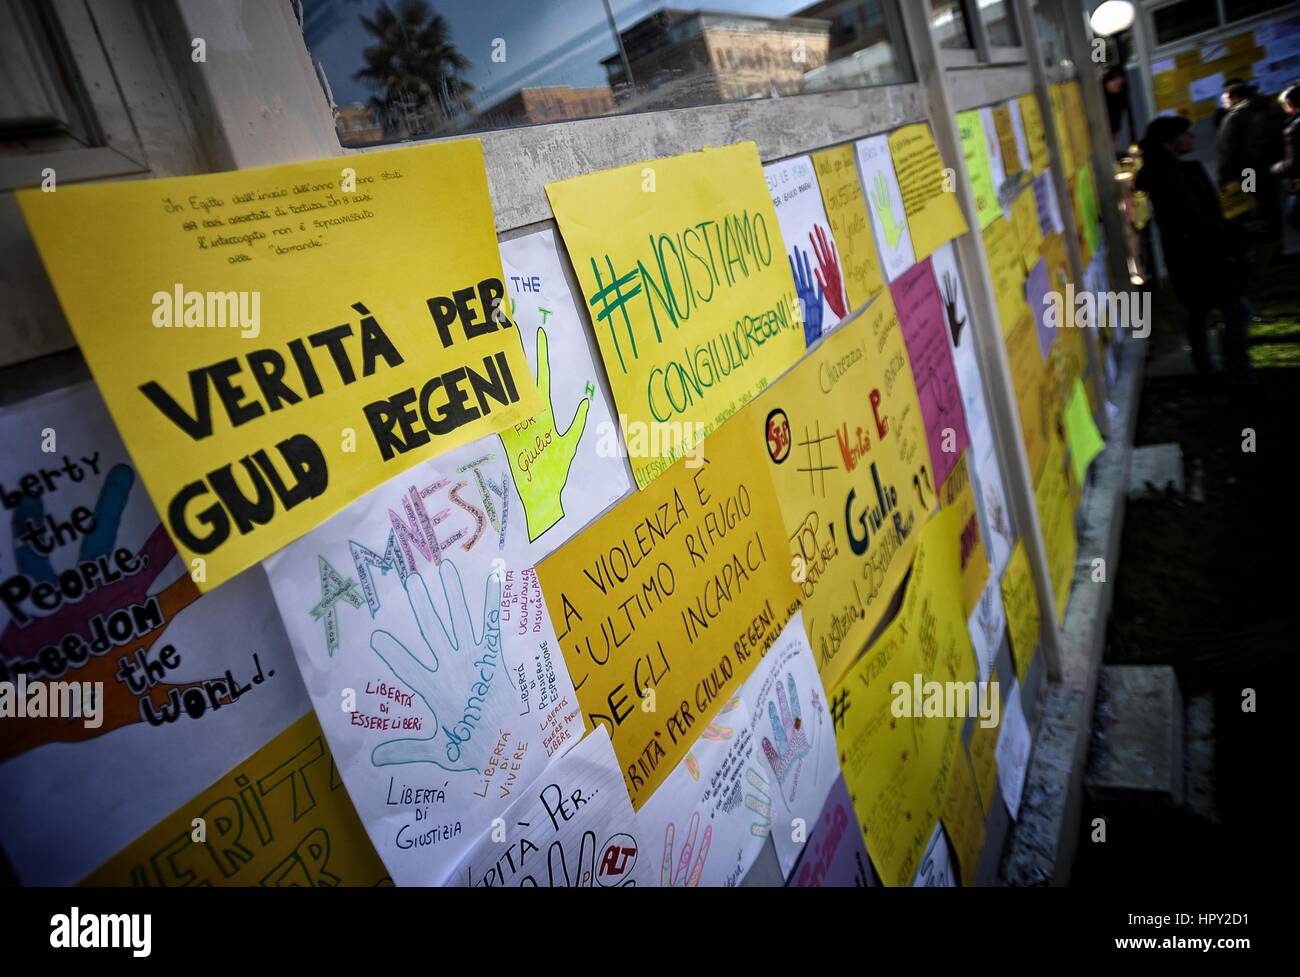 Manifestation d'Amnesty International à l'Université La Sapienza, un an après la mort de Julius Regeni Où : Rome, Italie Quand : 25 Jan 2017 Credit : IPA/WENN.com **Uniquement disponible pour publication au Royaume-Uni, USA, Allemagne, Autriche, Suisse** Banque D'Images